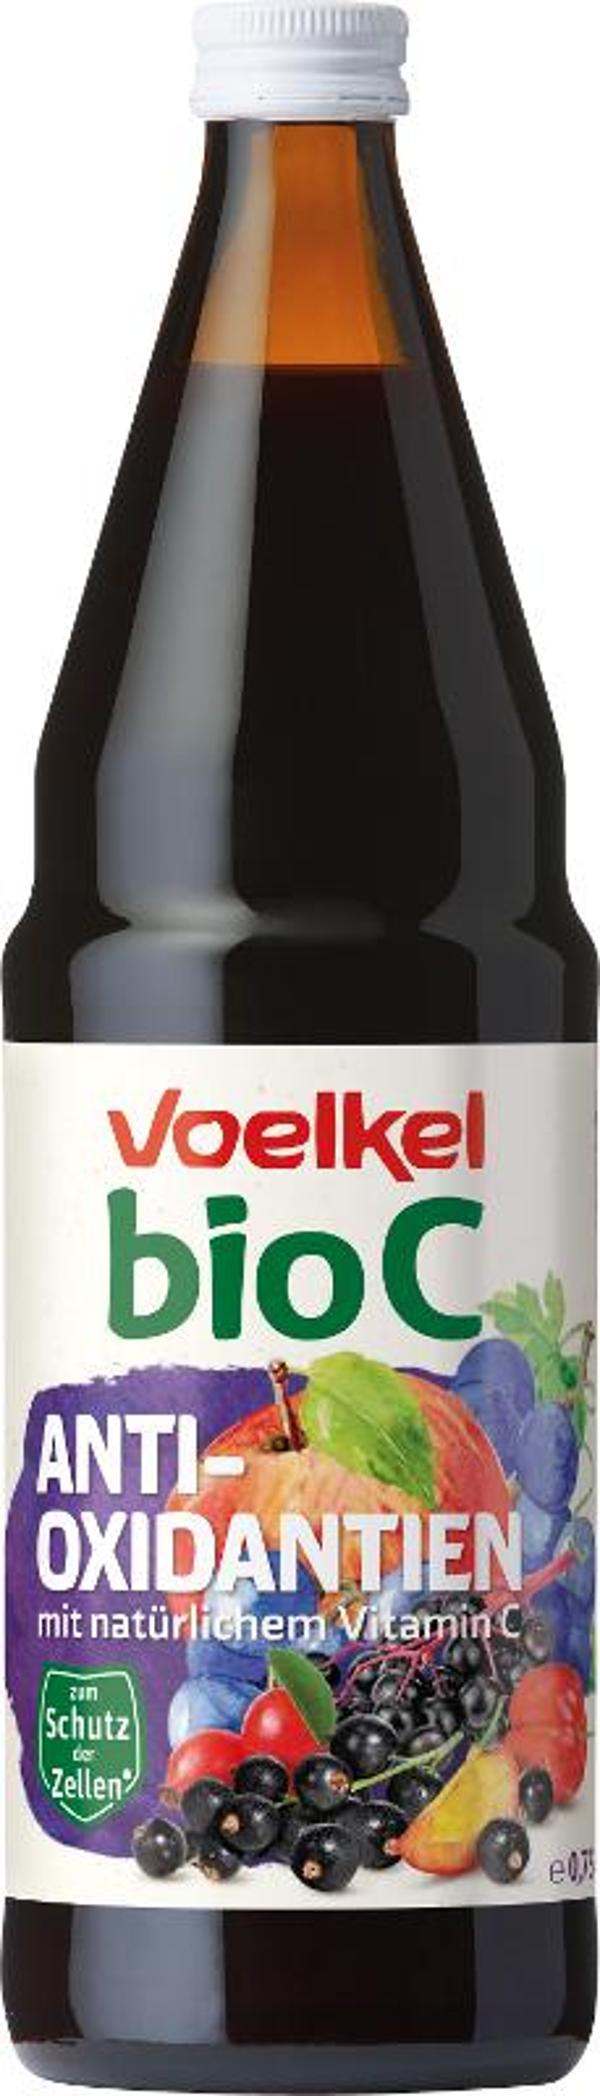 Produktfoto zu bioC Antioxidantien 0,75L